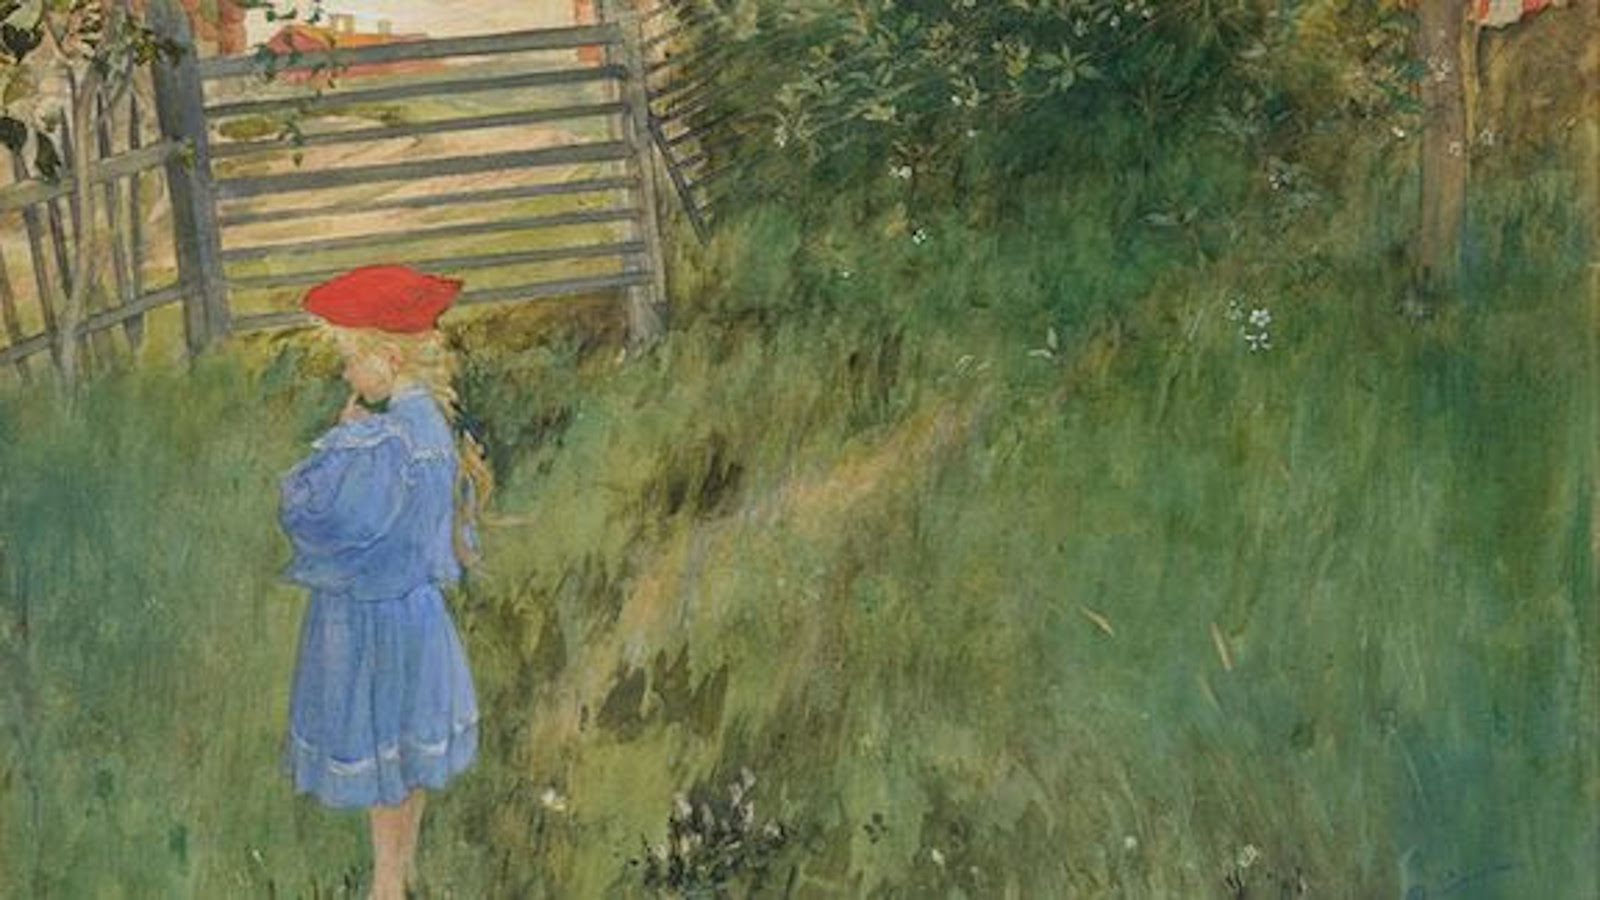 Kuvassa on pikkutyttö selin kuvan vasemmalla reunalla ja katselee nurmikolla olevia kukkia.  Takana on aitaa ja pensaita.  Maalaus on kesäkuva.